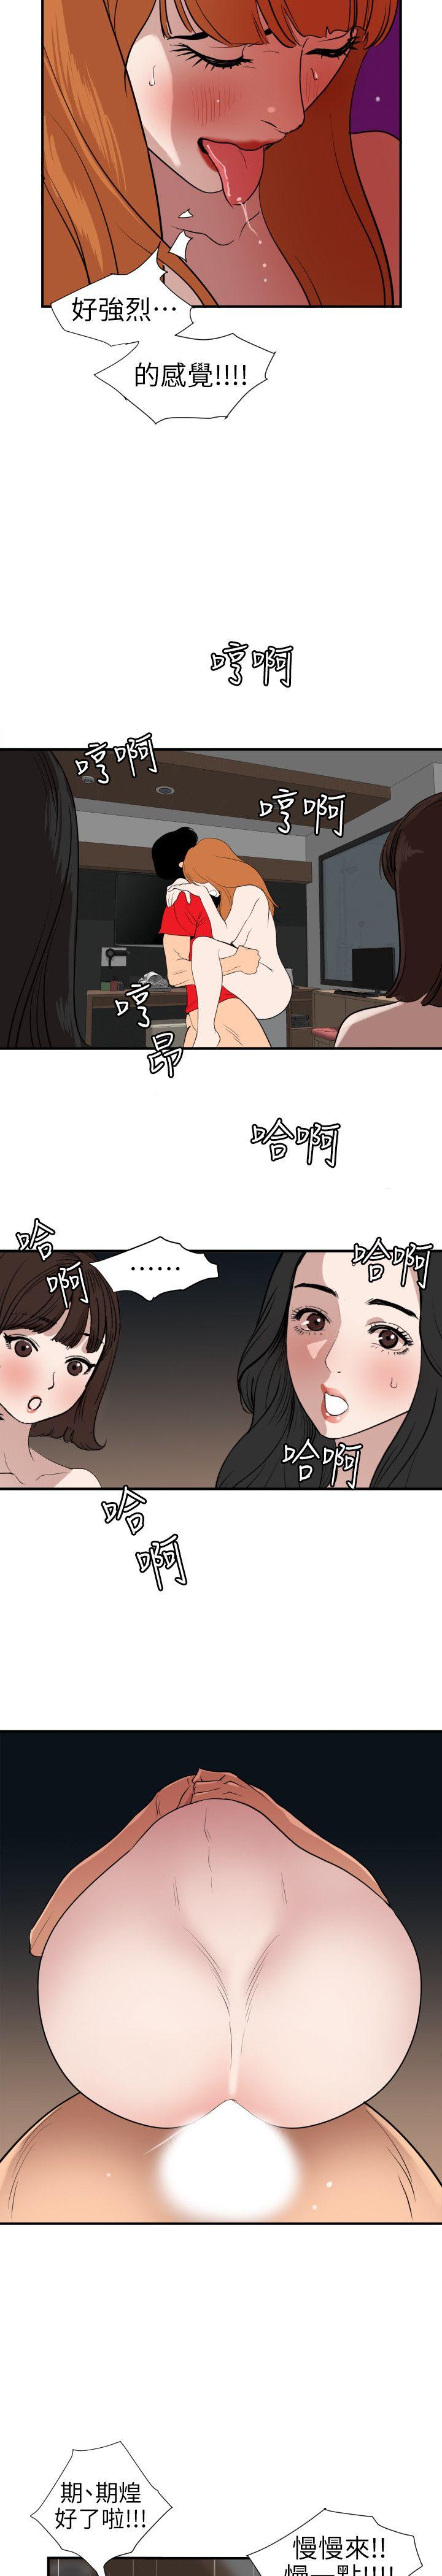 韩国污漫画 欲求王 第105话-激烈的初体验 9